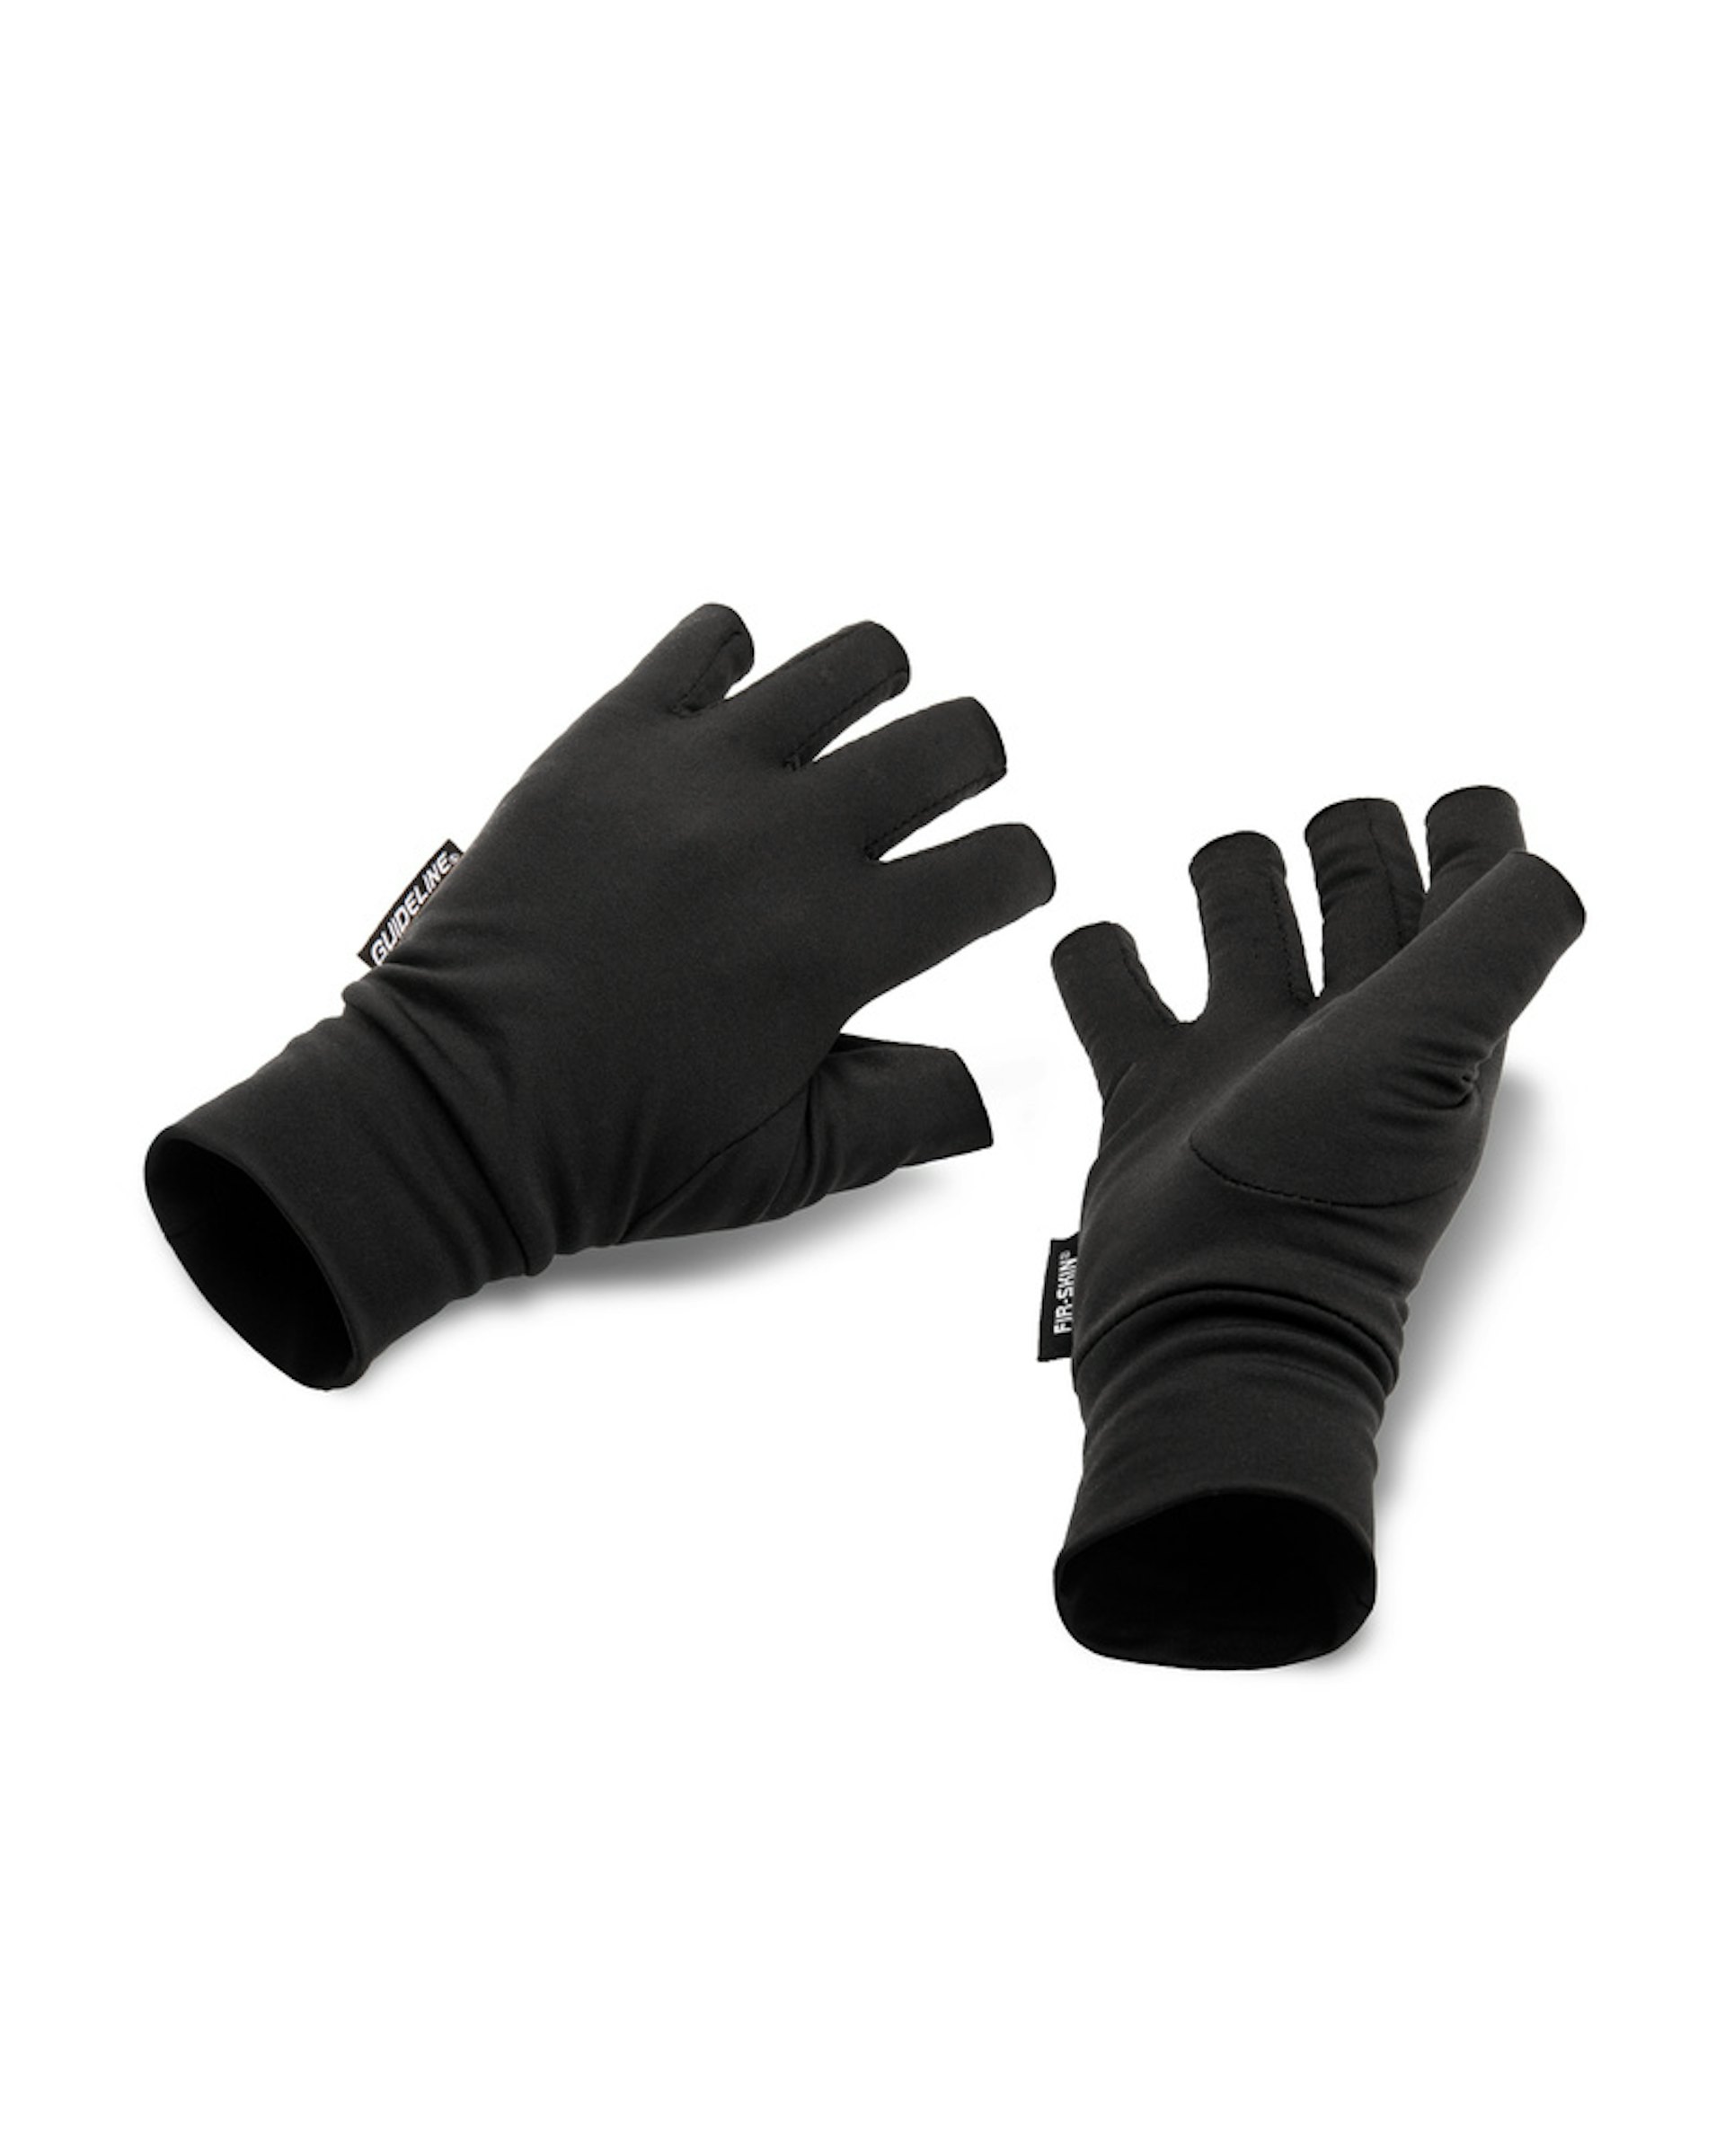 FIR-SKIN Fingerless Gloves XXL (slide 1 of 1)